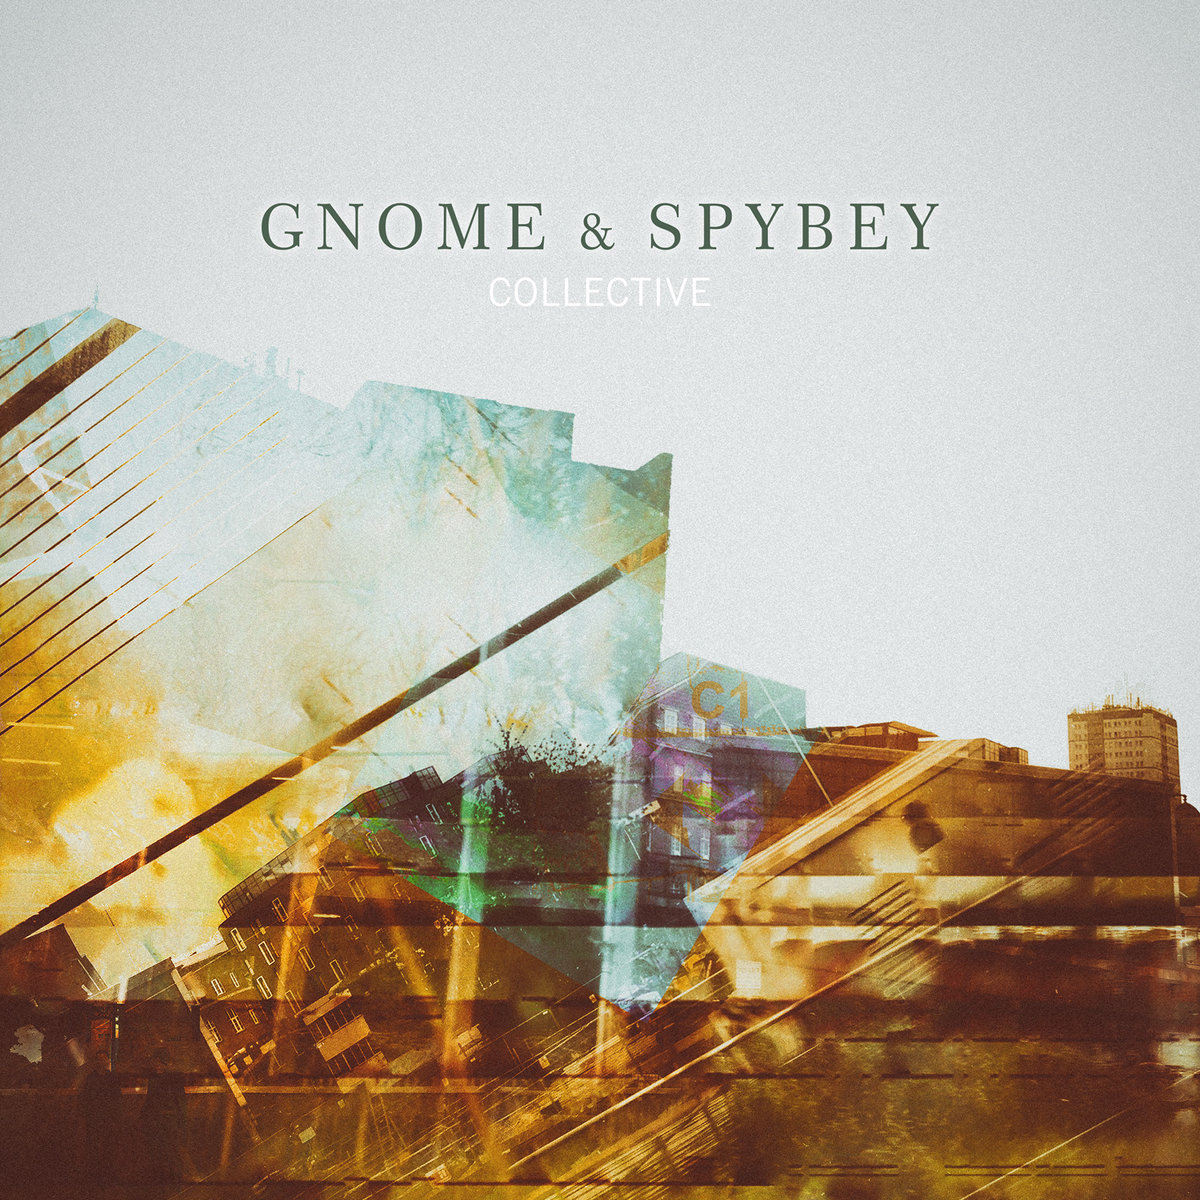 Gnome&spybey cover